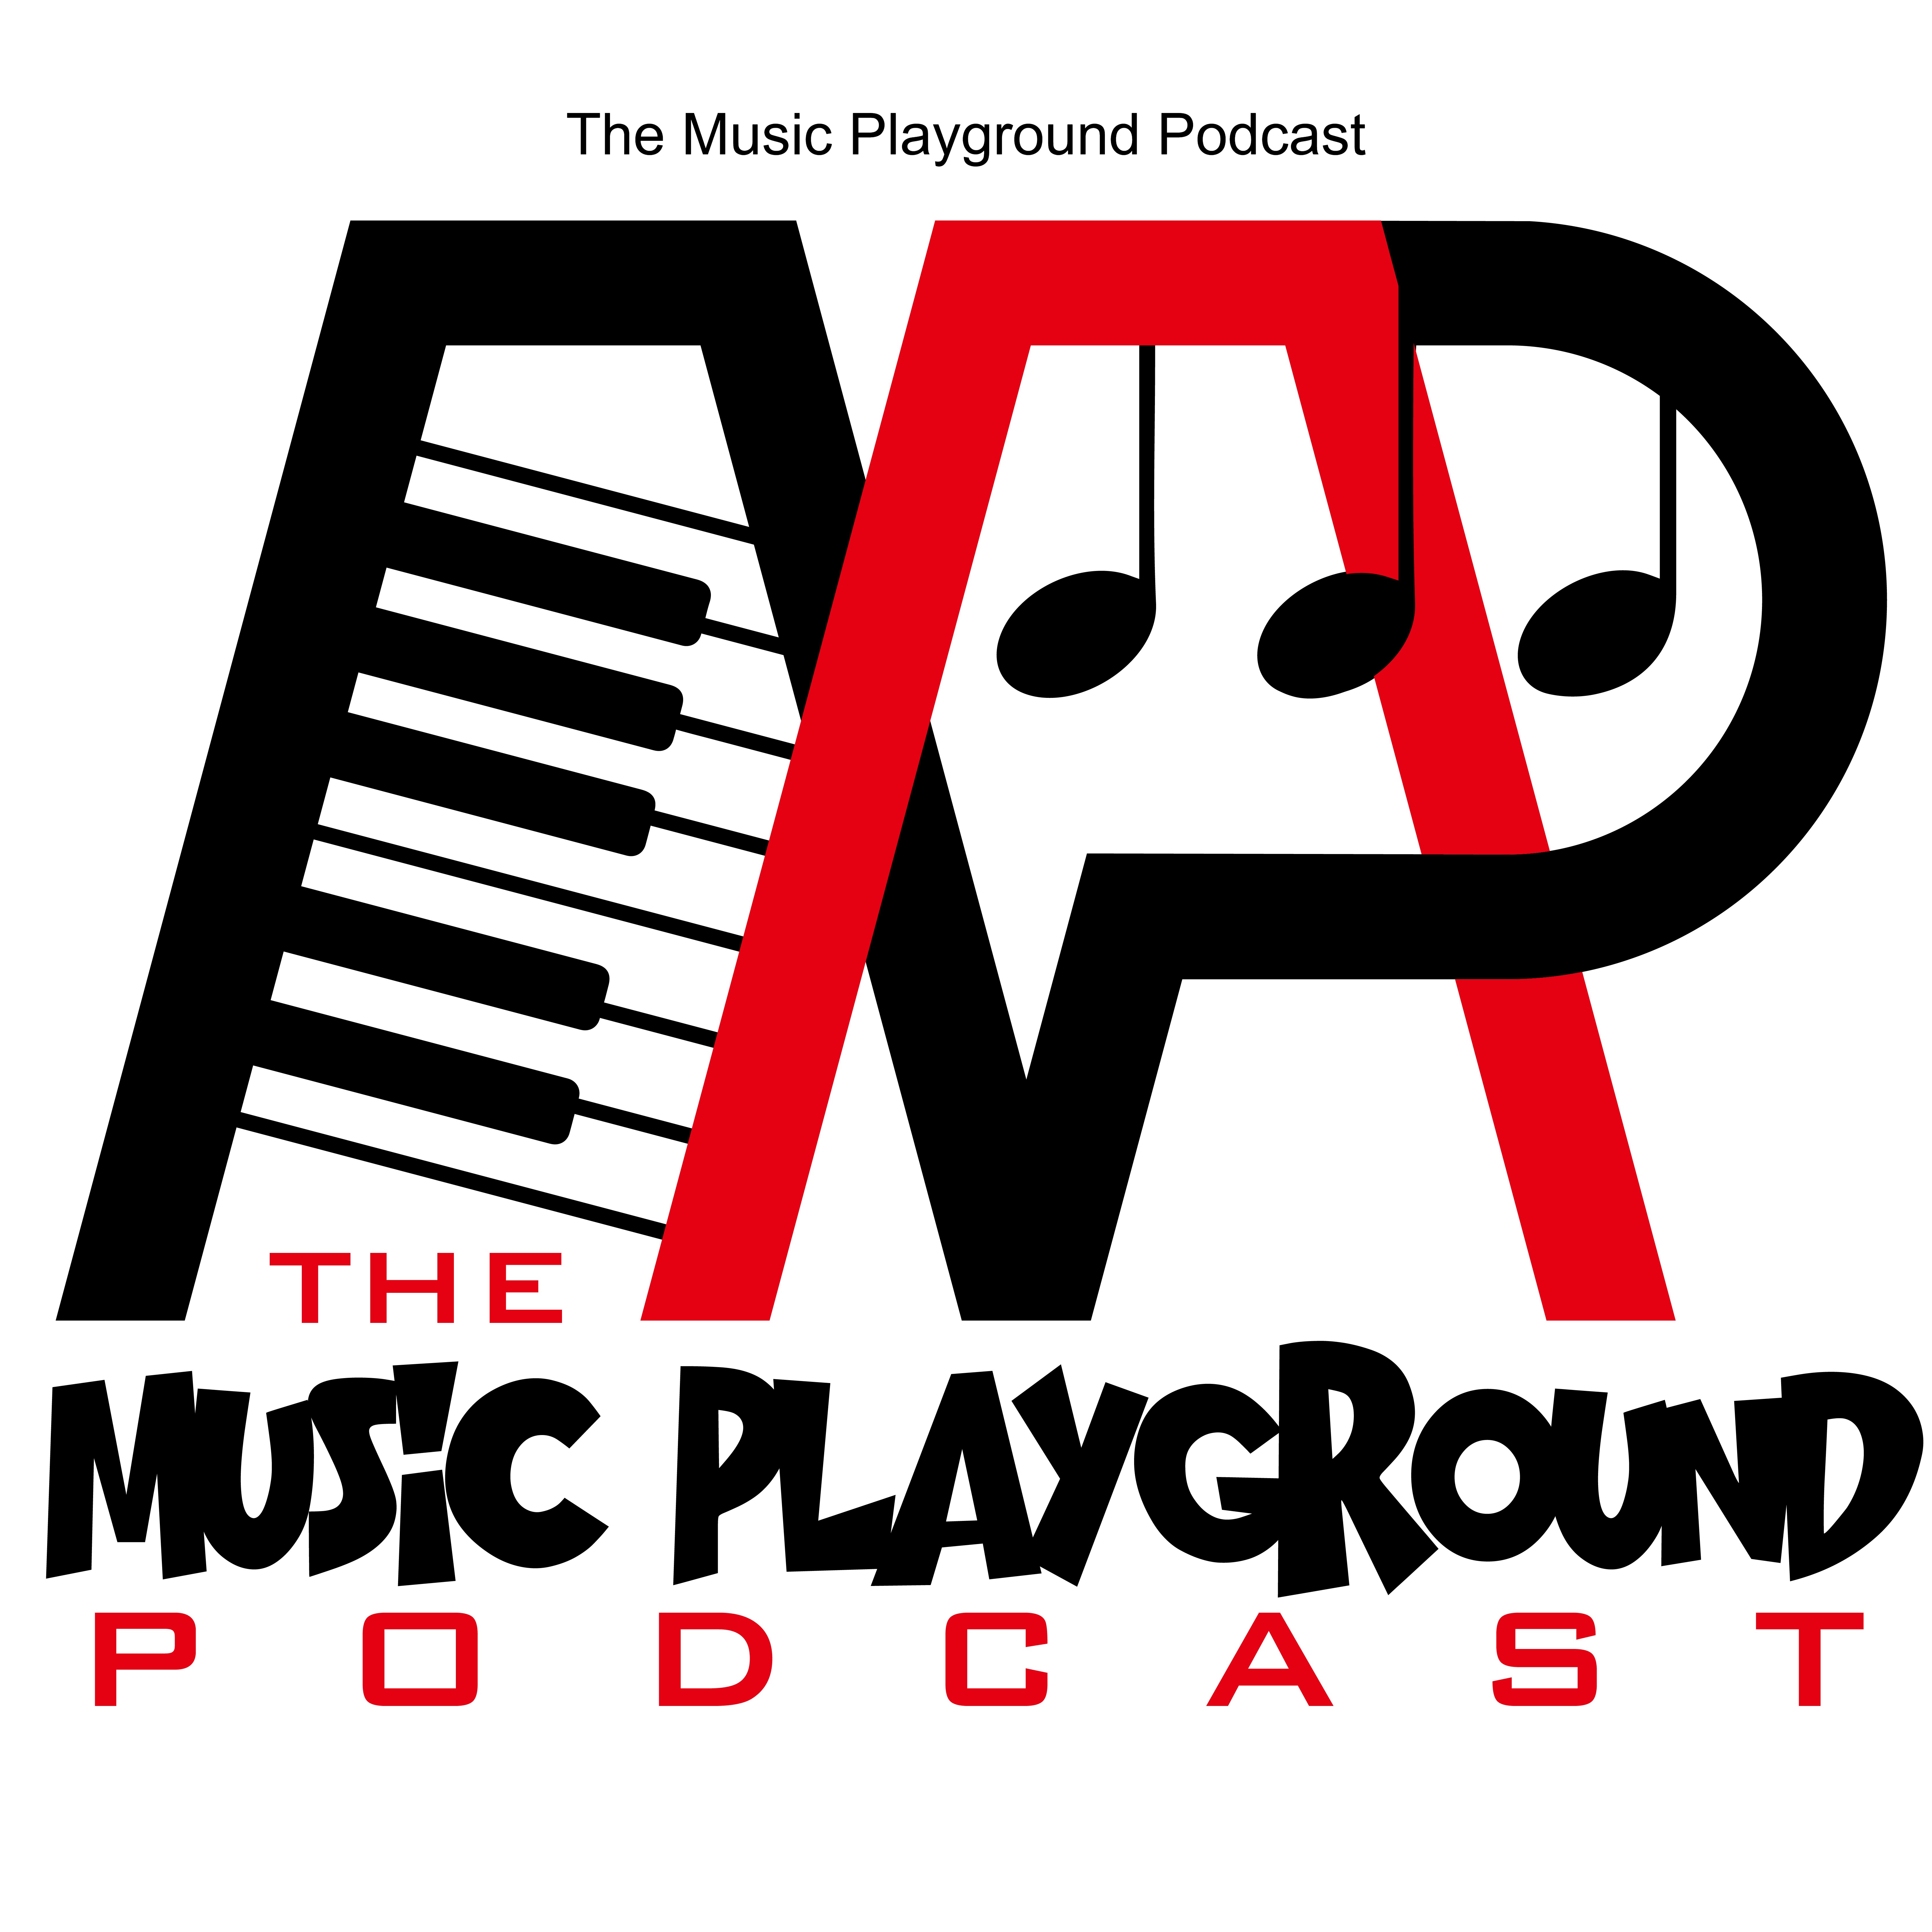 The Music Playground Podcast